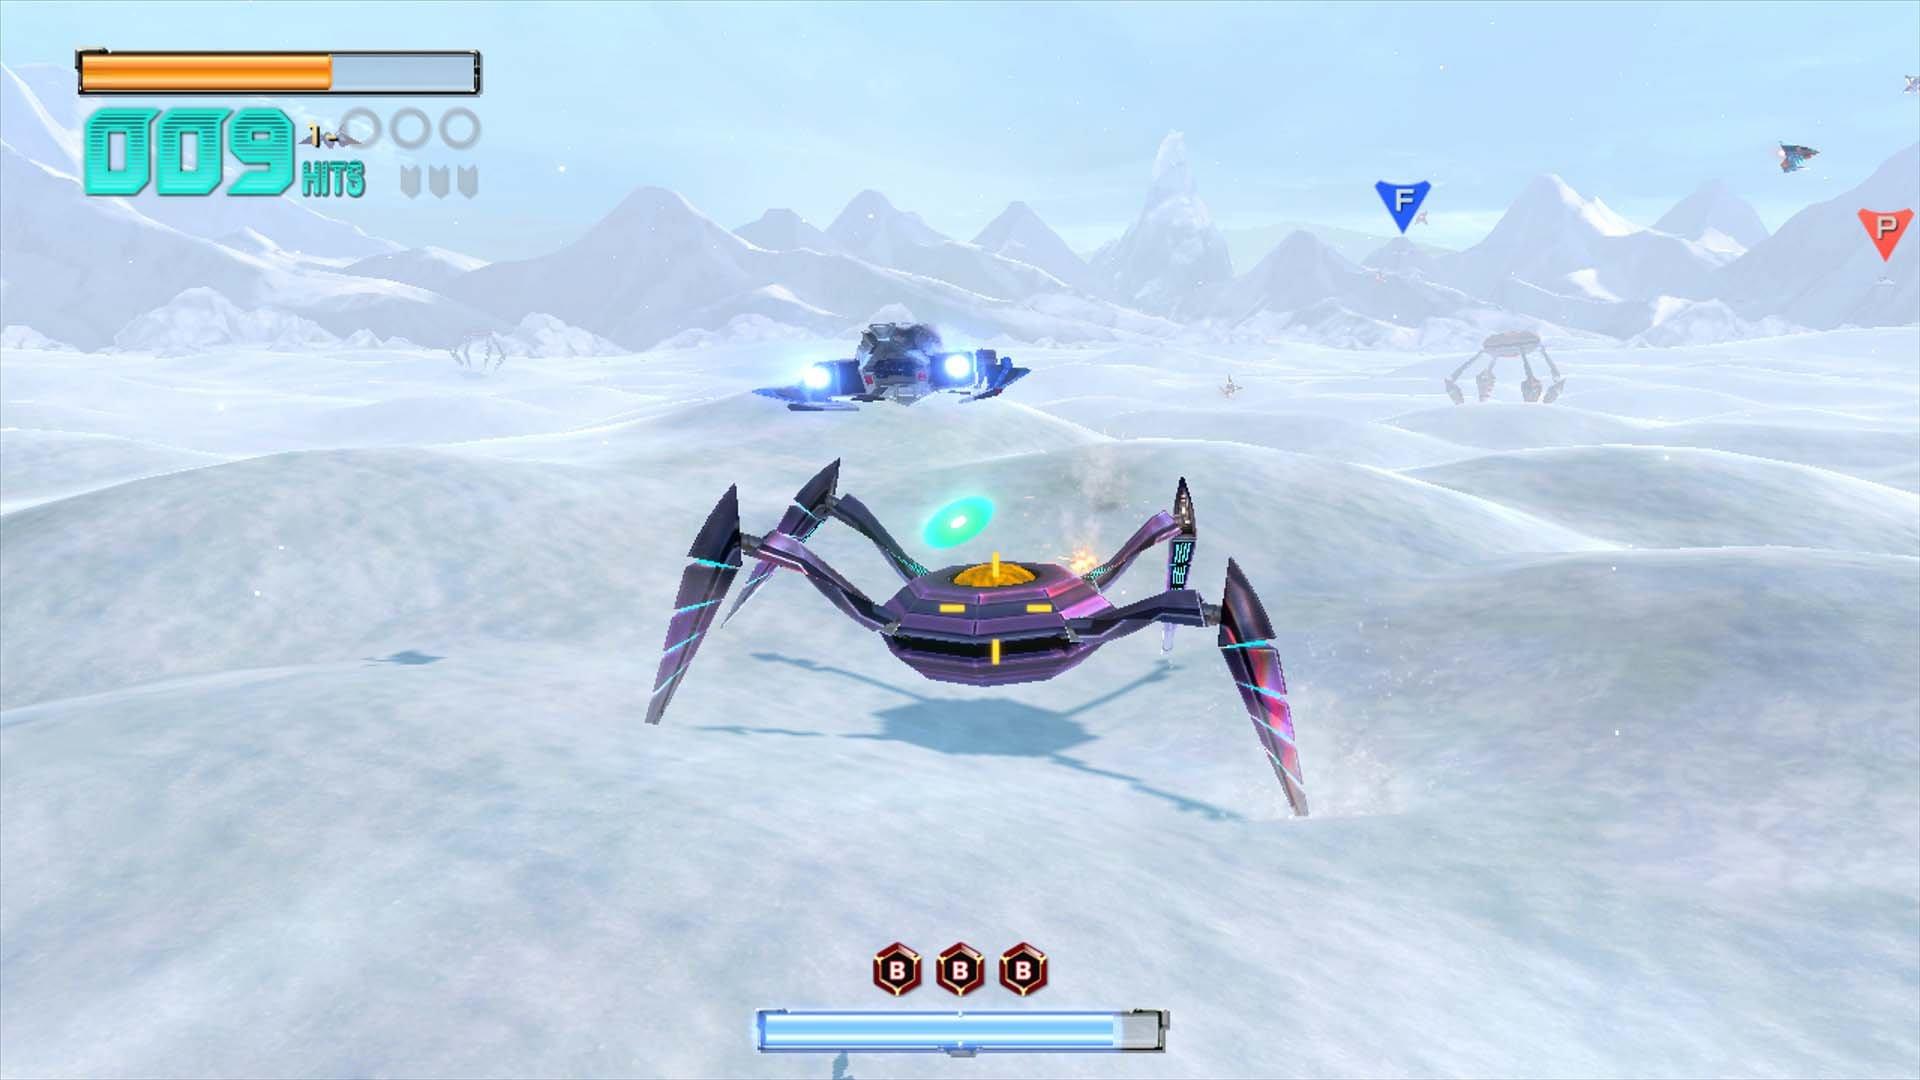 Star Fox Zero - Pre-Owned (Wii U) 